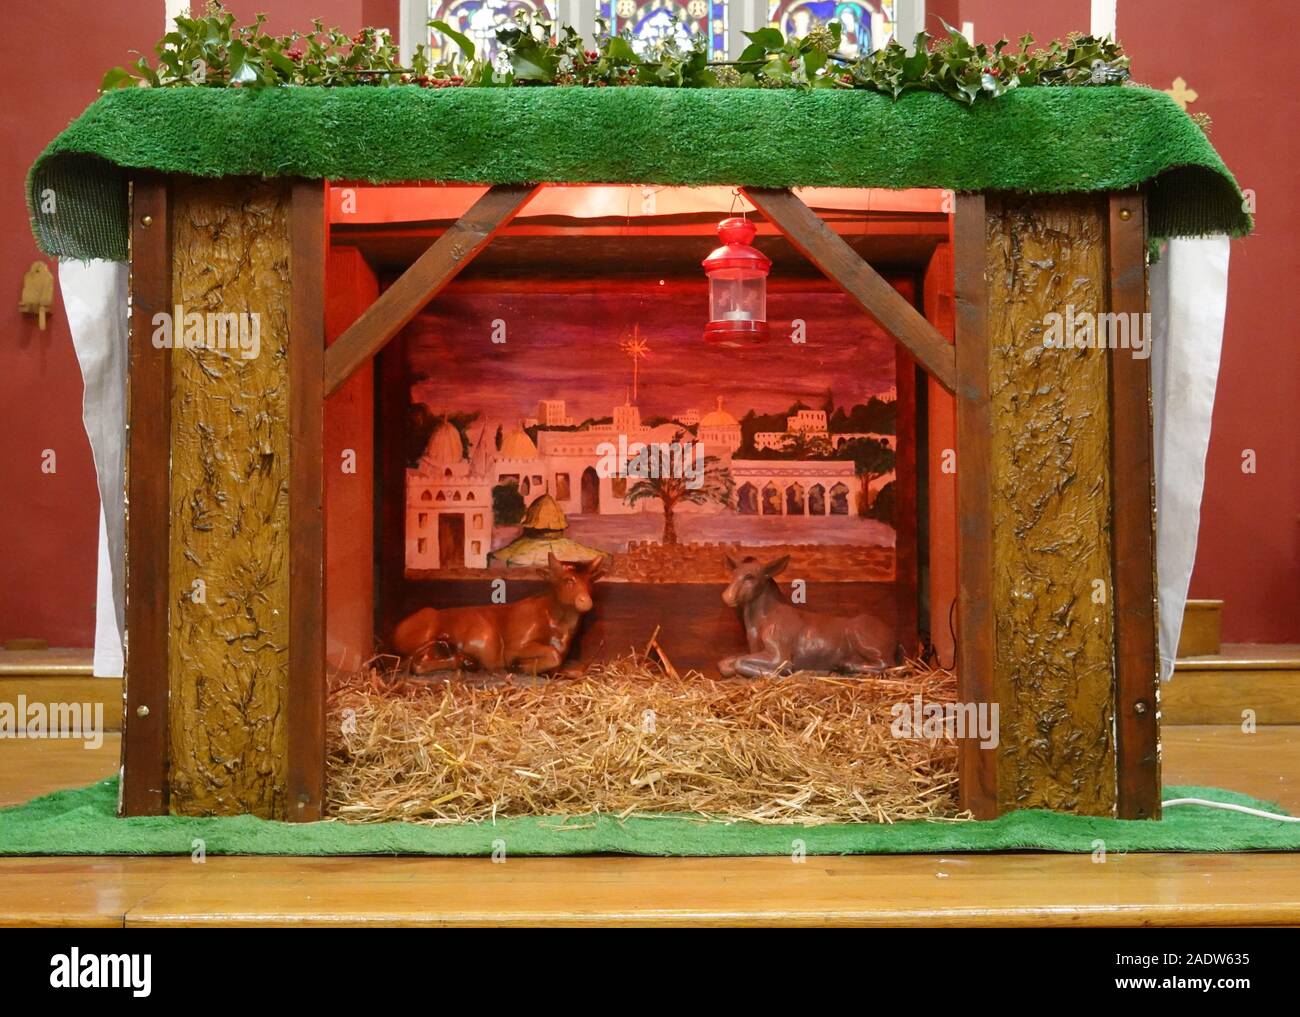 Christmas Lobby - Church Stage Design Ideas - Scenic sets and stage design  ideas from churches around the globe.